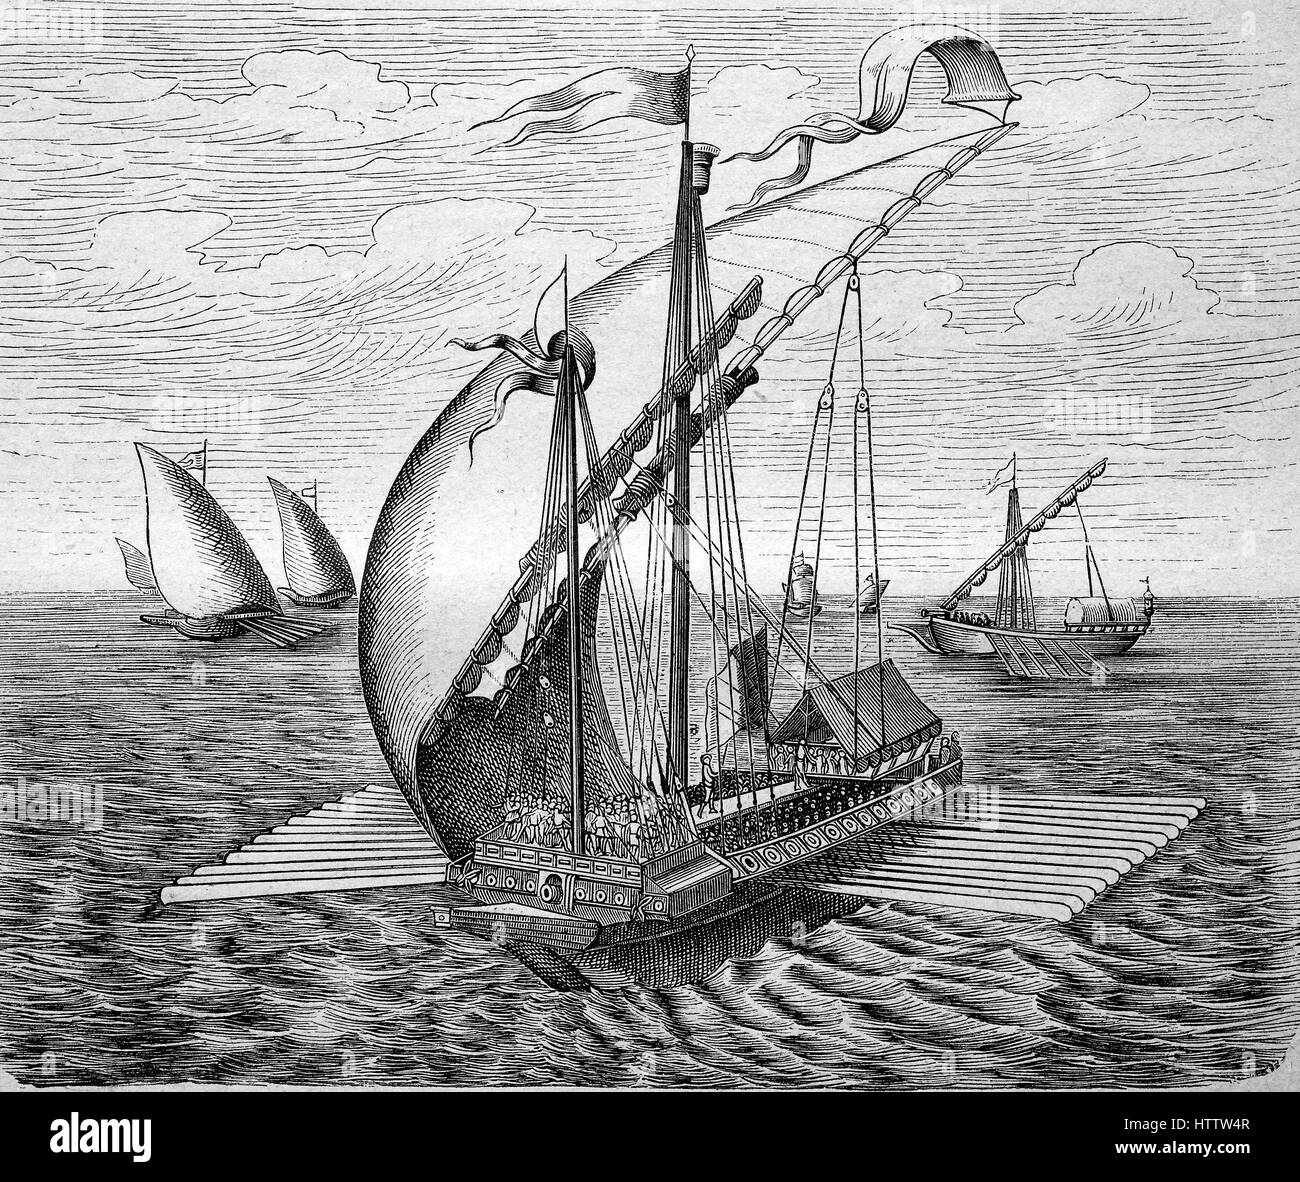 Una galera veneziana nave a vela, Venezia, Venezia, Italia, la riproduzione di una xilografia dal 1882, digitale migliorata Foto Stock